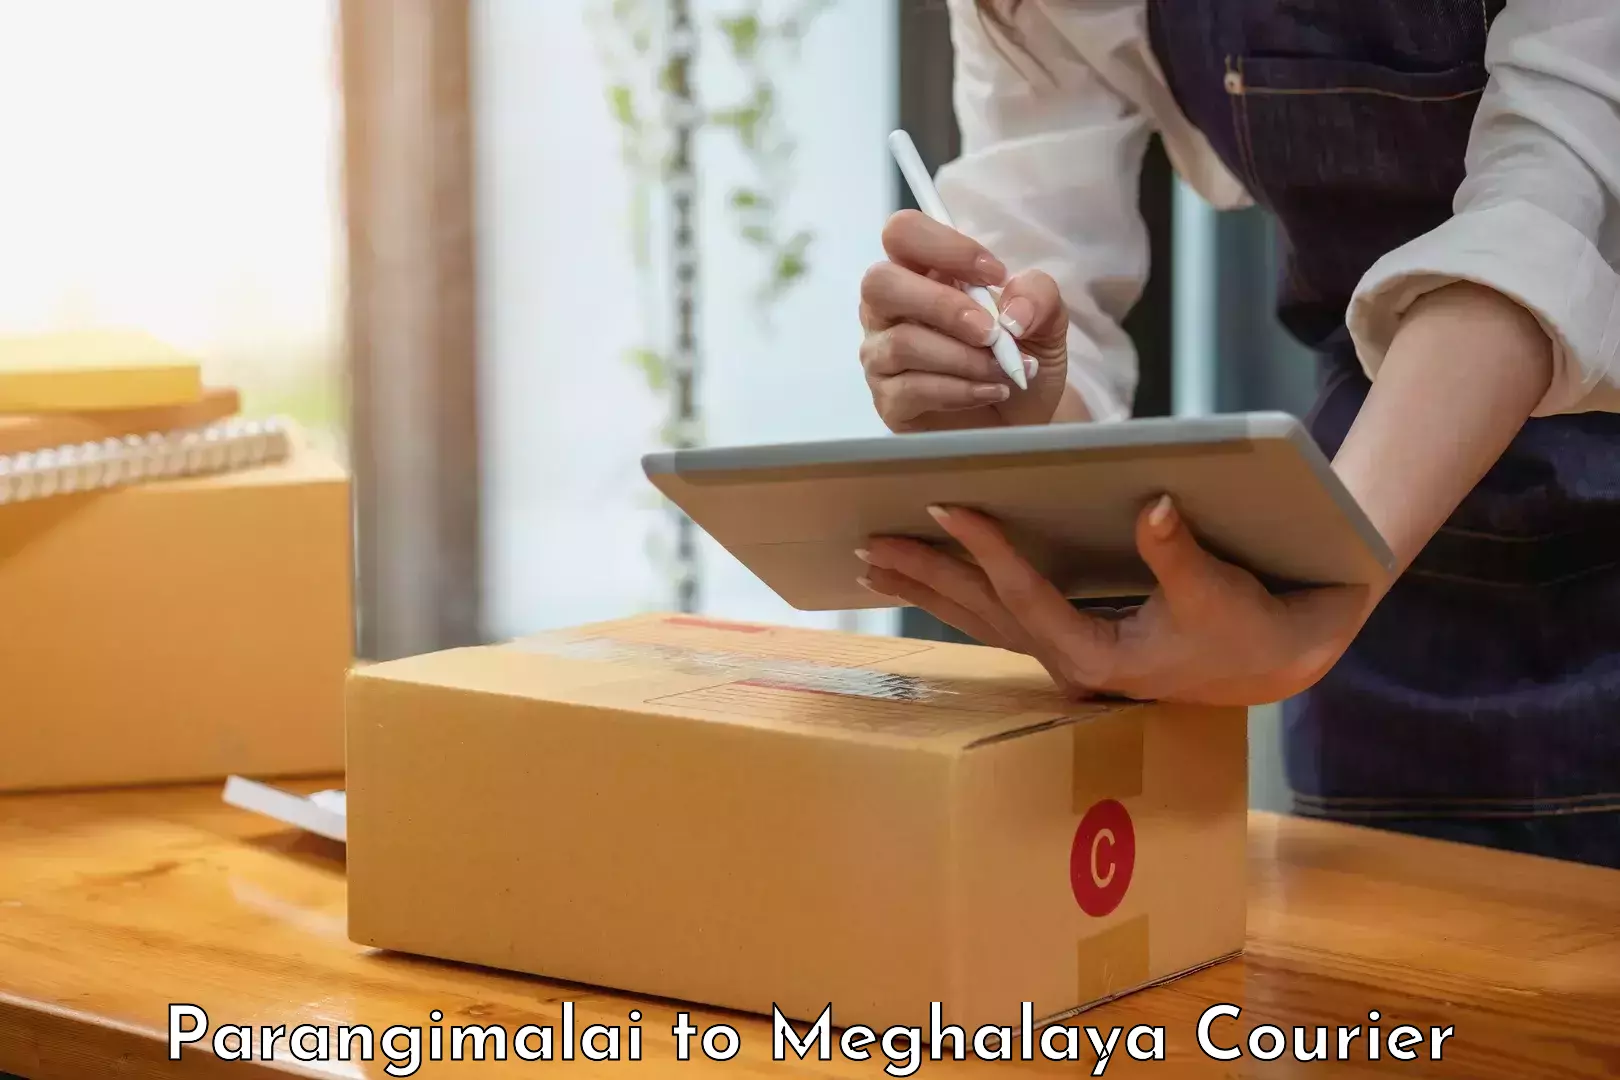 Courier service efficiency Parangimalai to Meghalaya